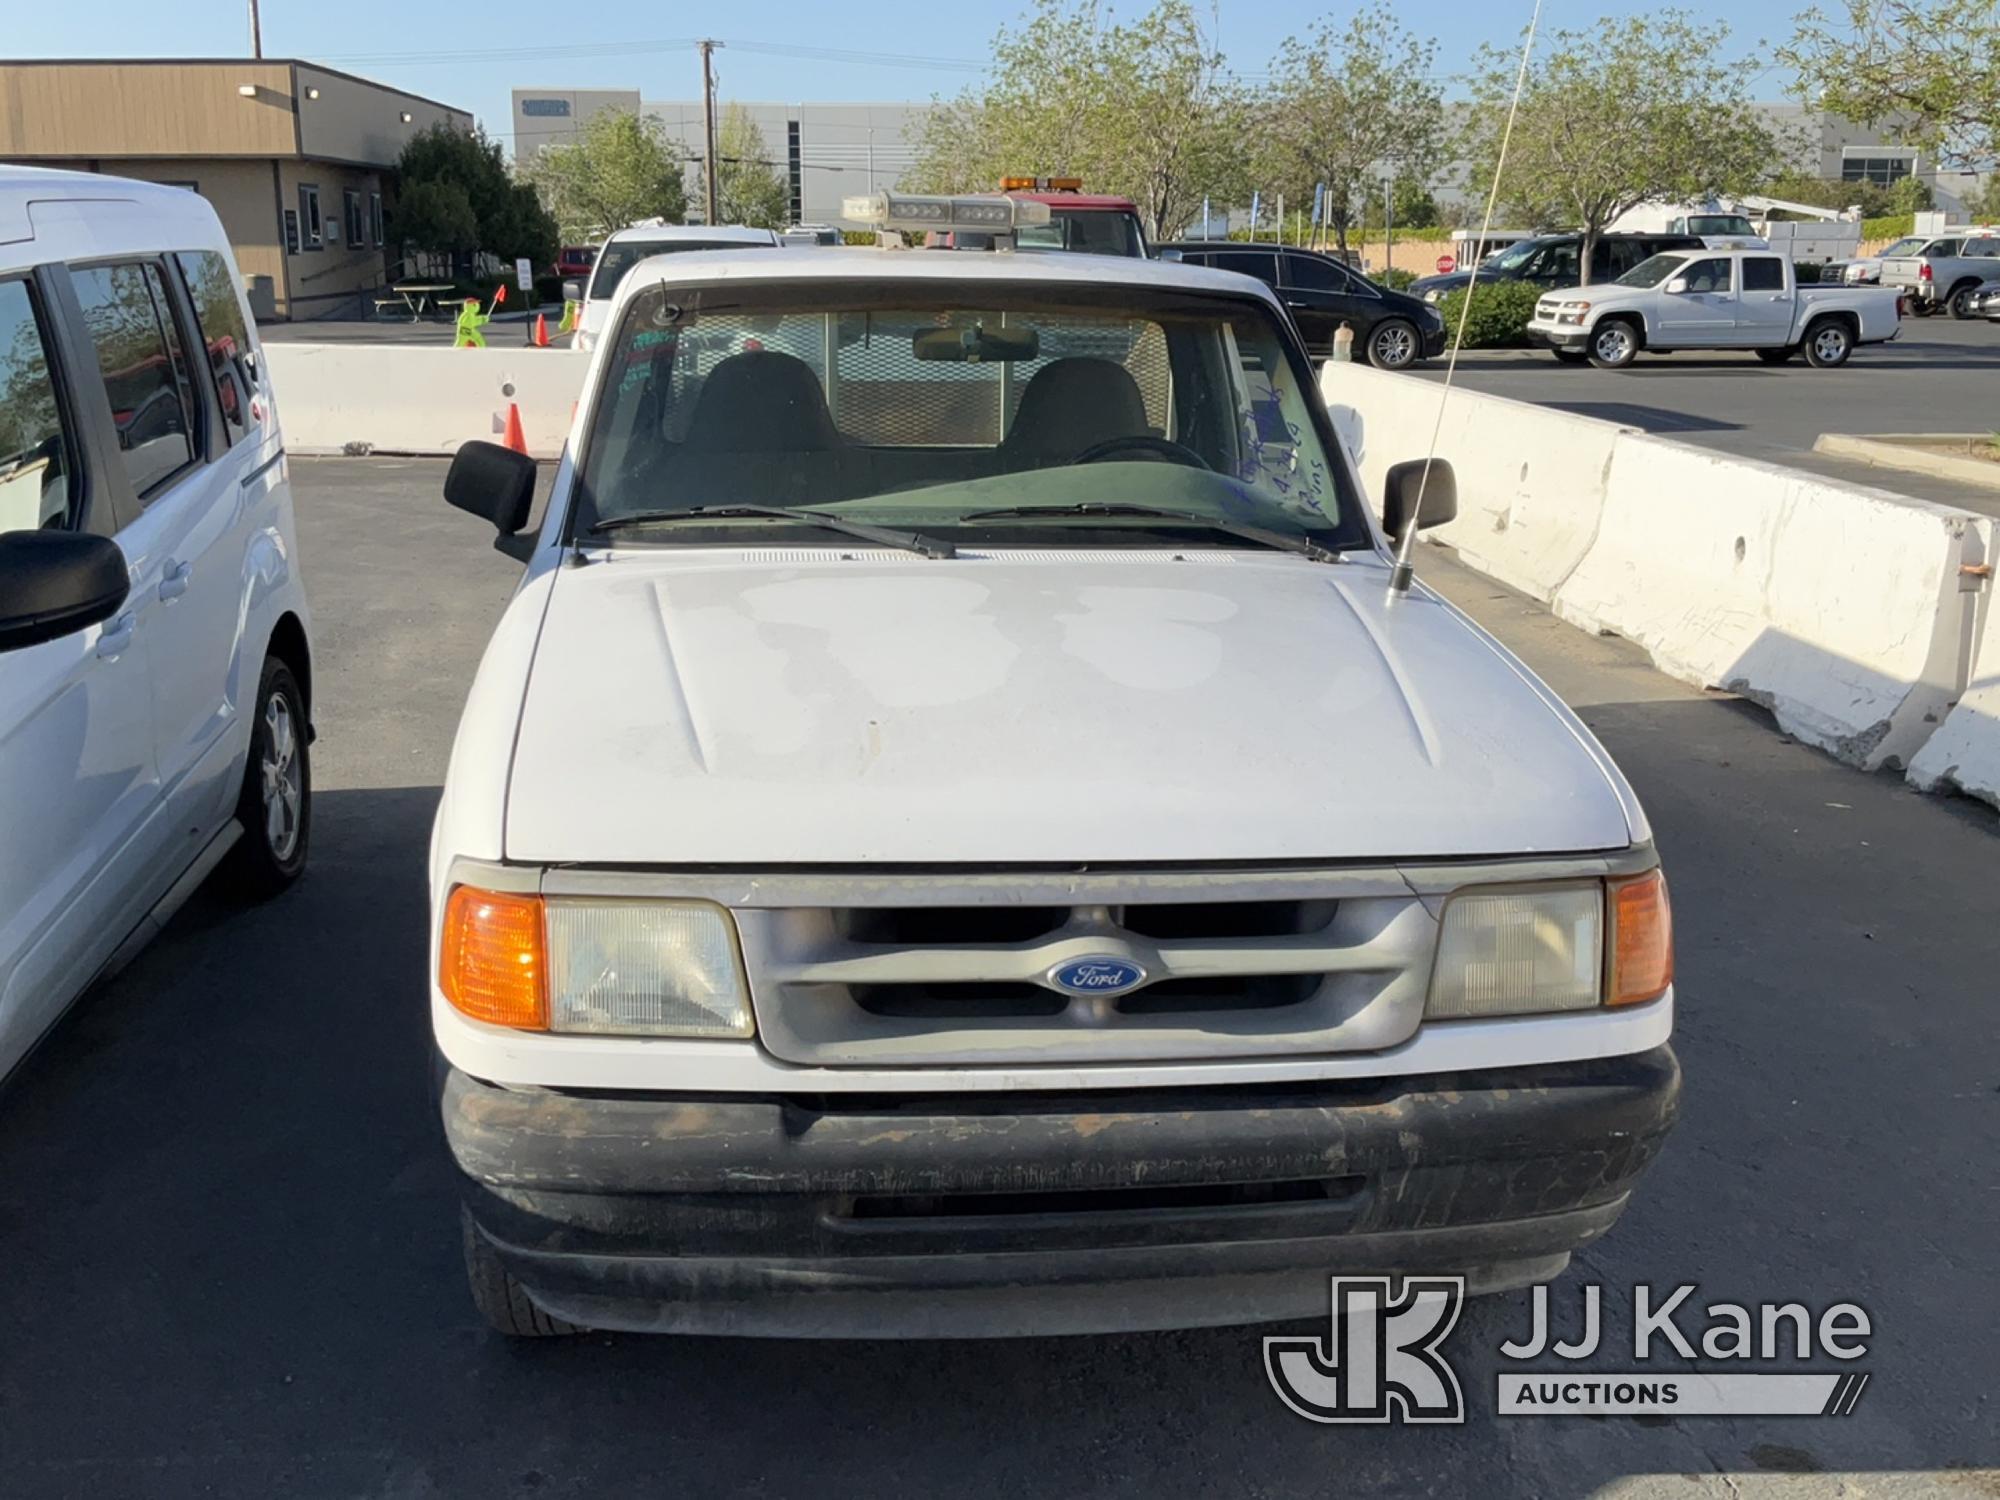 (Jurupa Valley, CA) 1997 Ford Ranger Regular Cab Pickup 2-DR Runs & Moves, Missing Driver Door